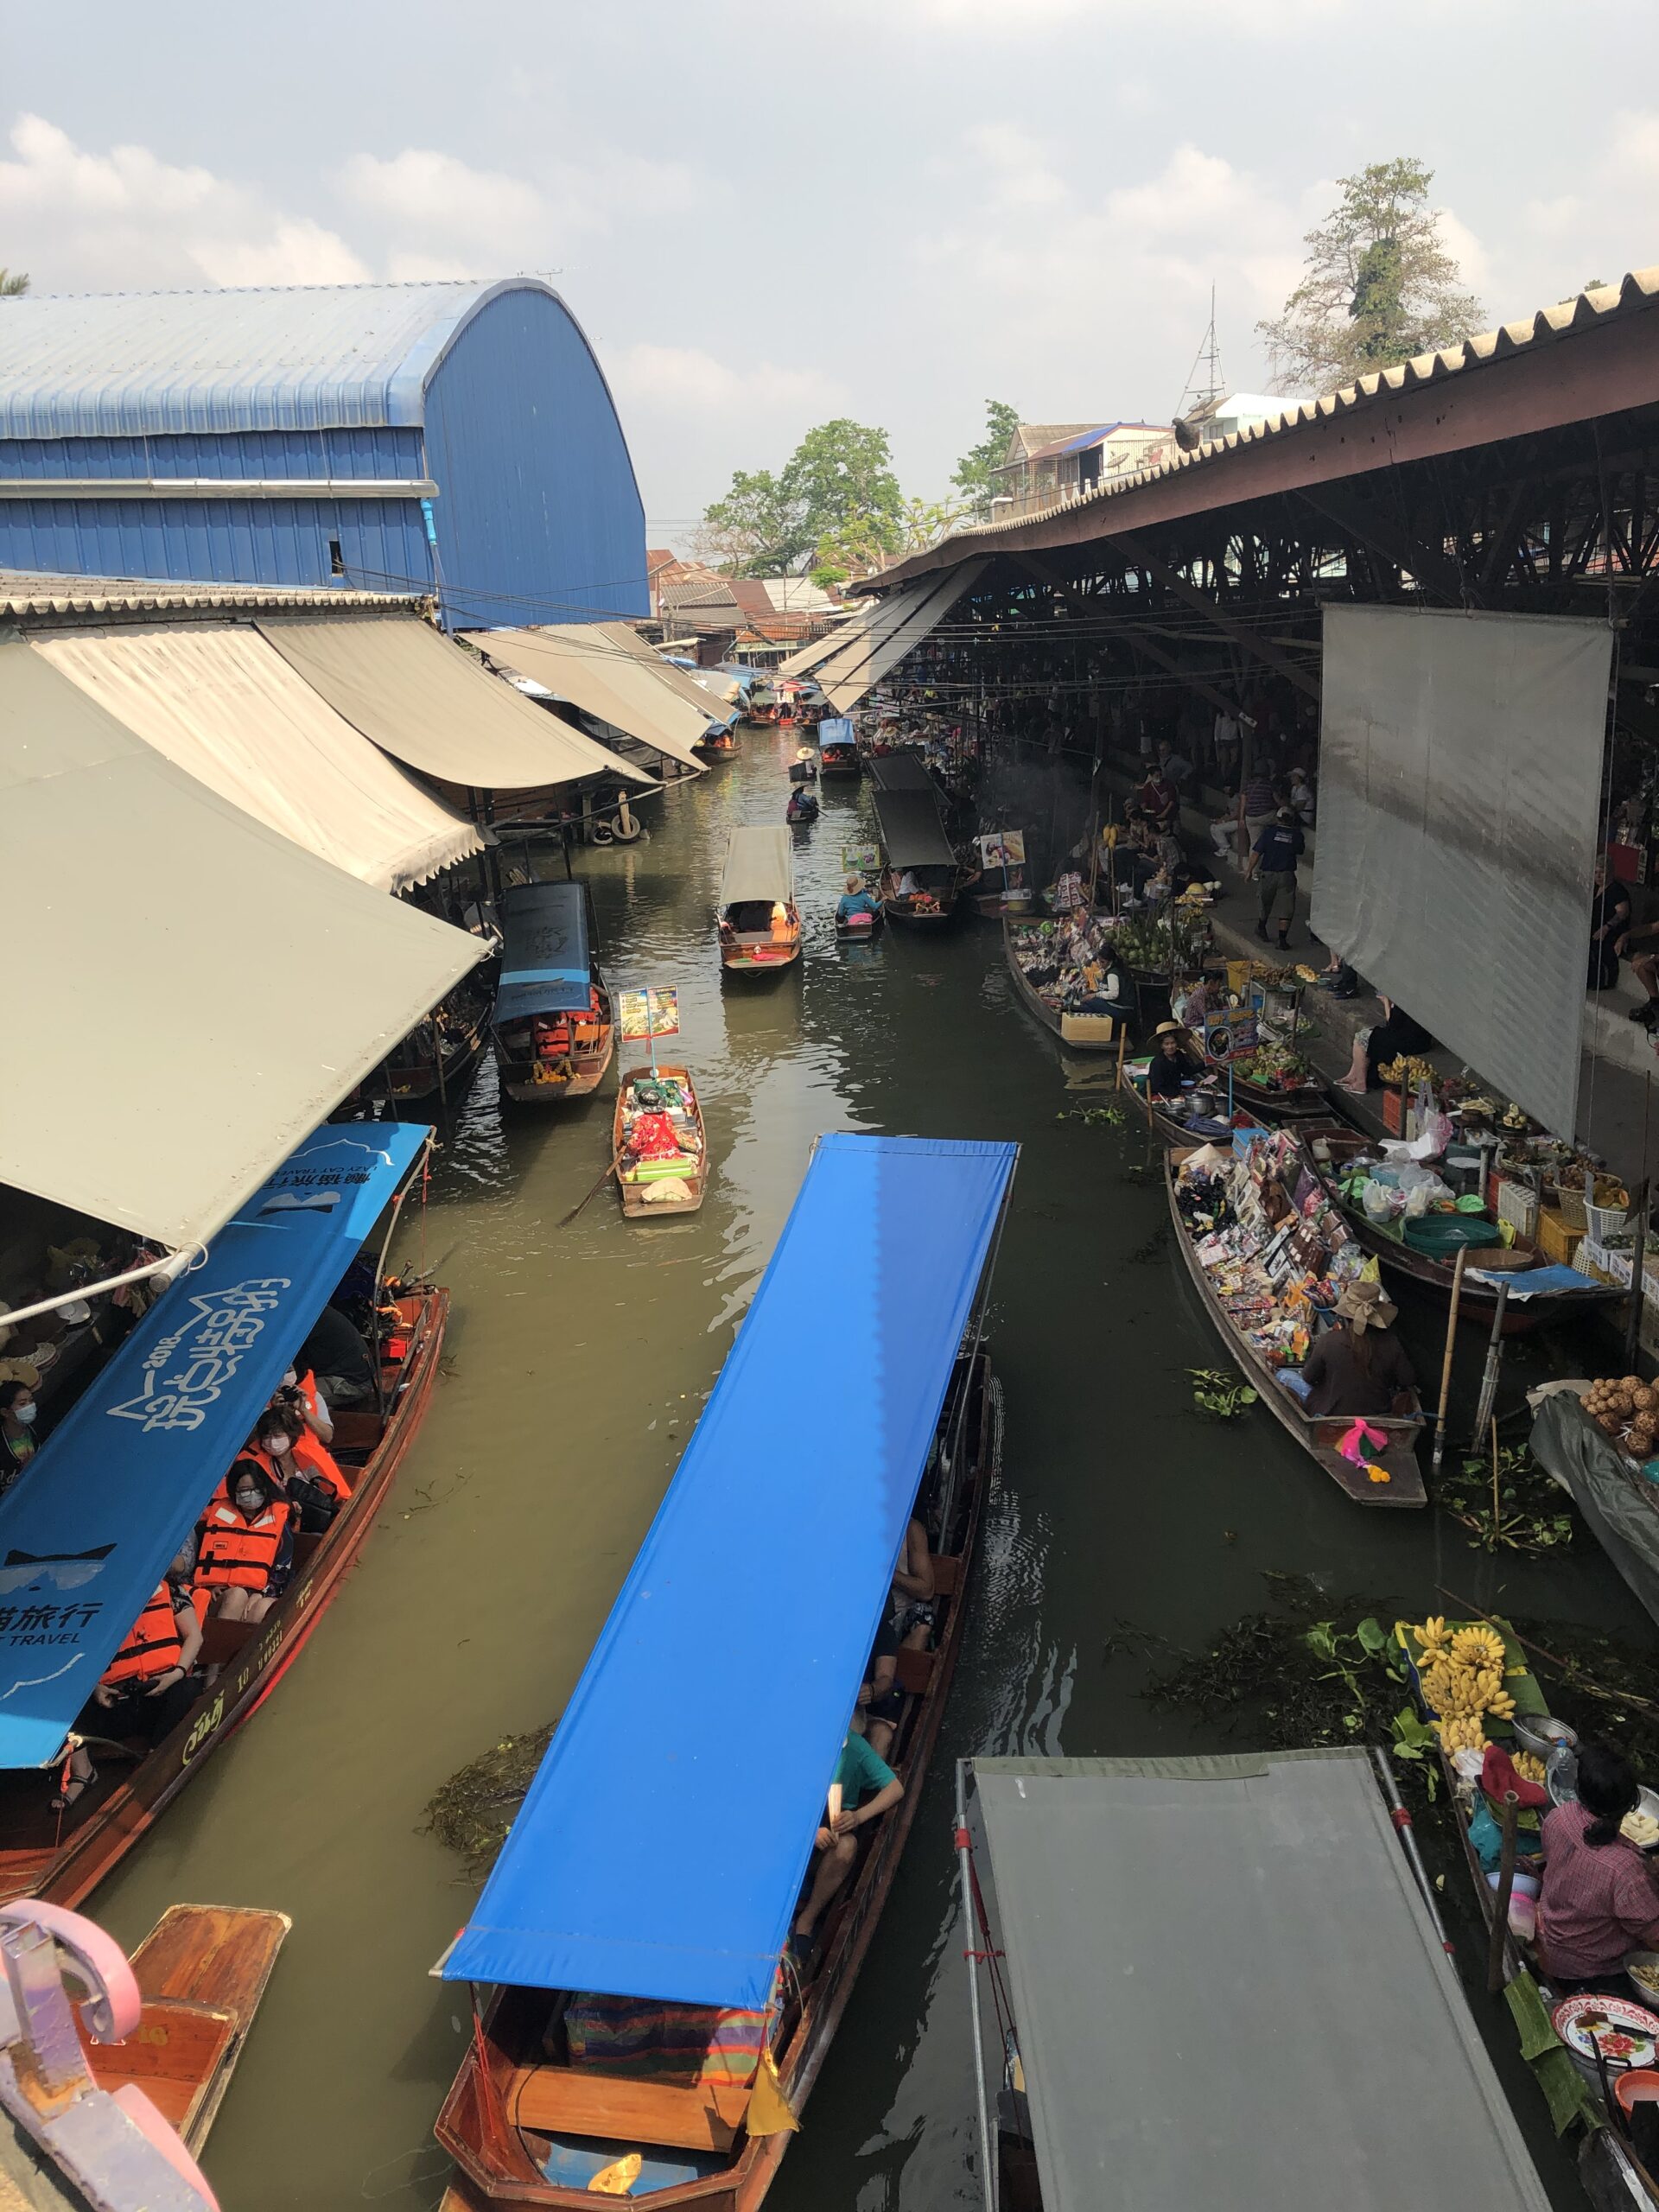 Floating market near Bangkok.
